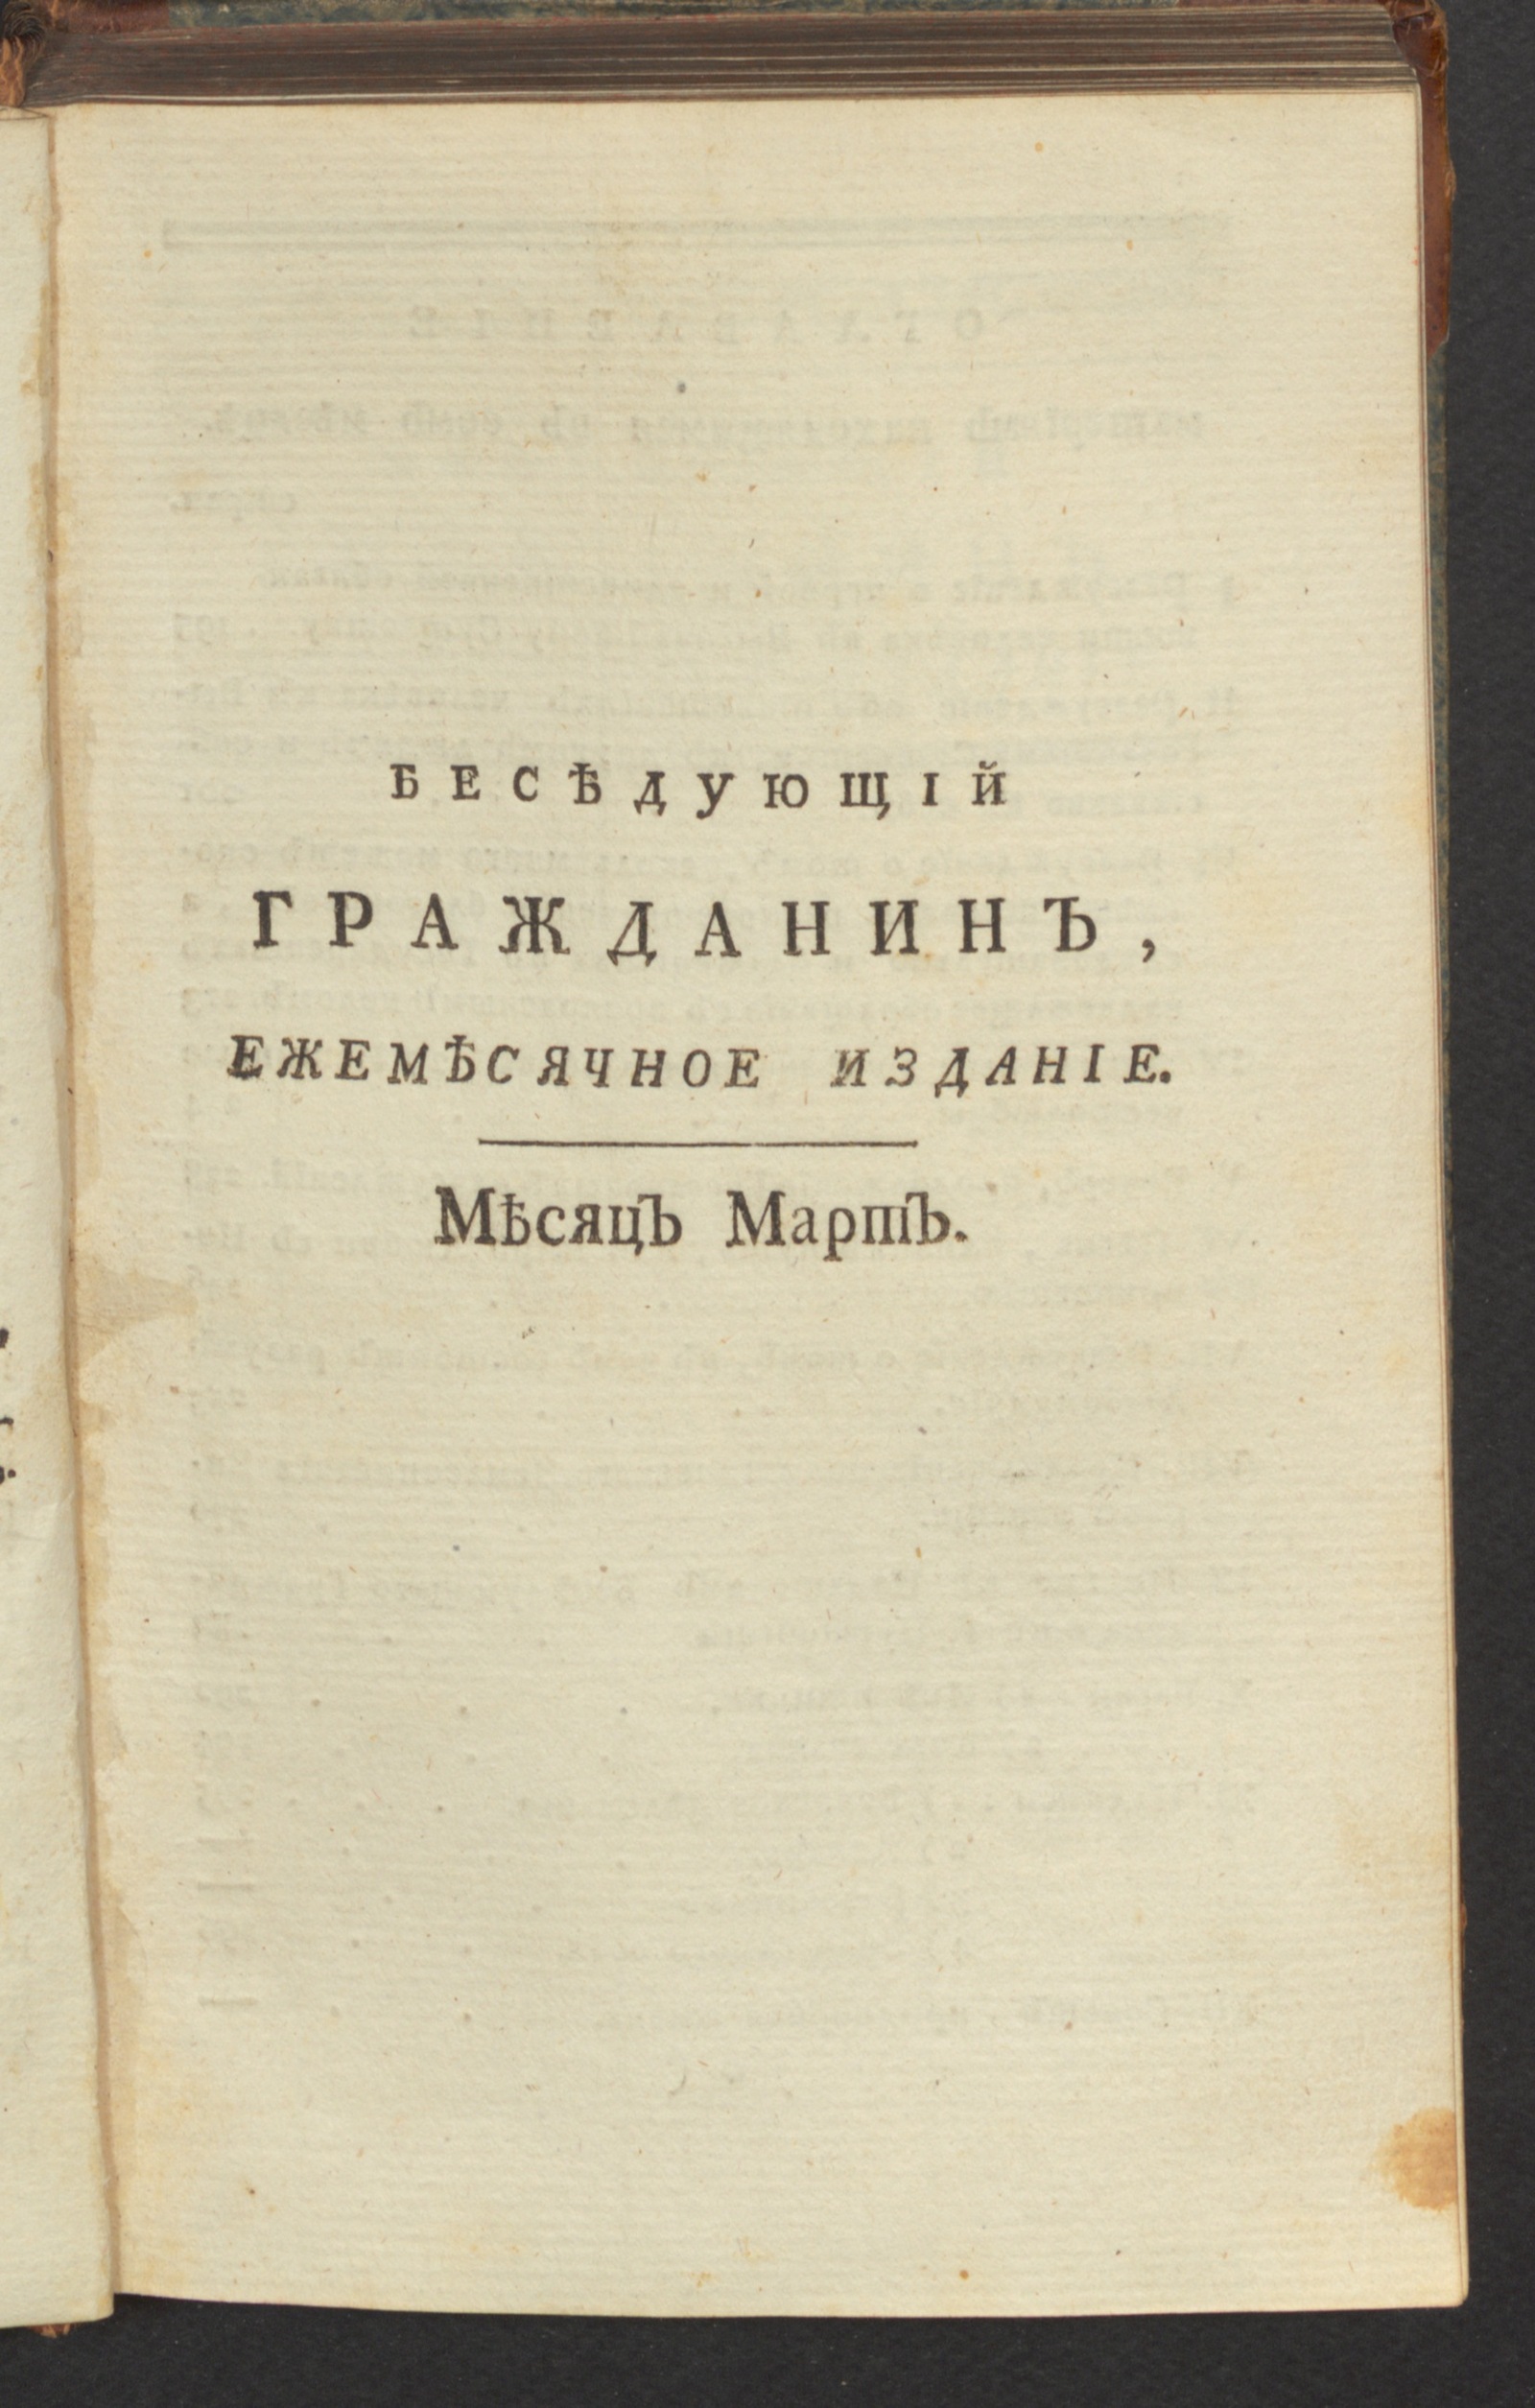 Изображение книги Беседующий гражданин. Ч. 1. [1789], март